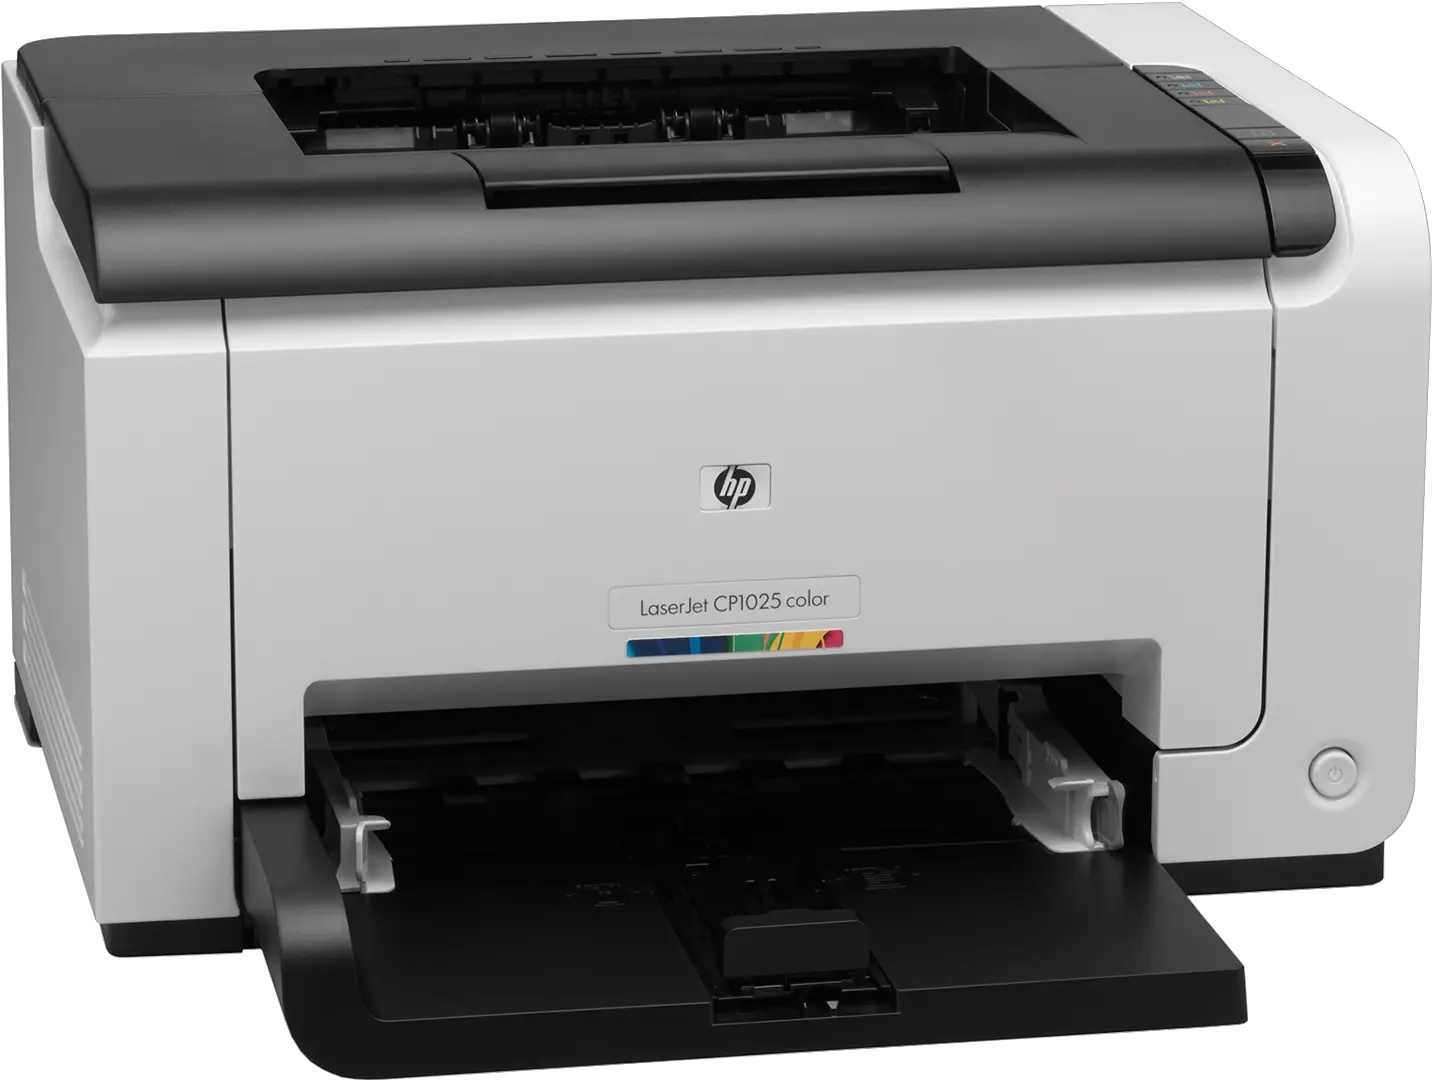 Download Printer Laser Jet Laserjet Printer Hp Laserjet Cp1025 Color Png Printer Png